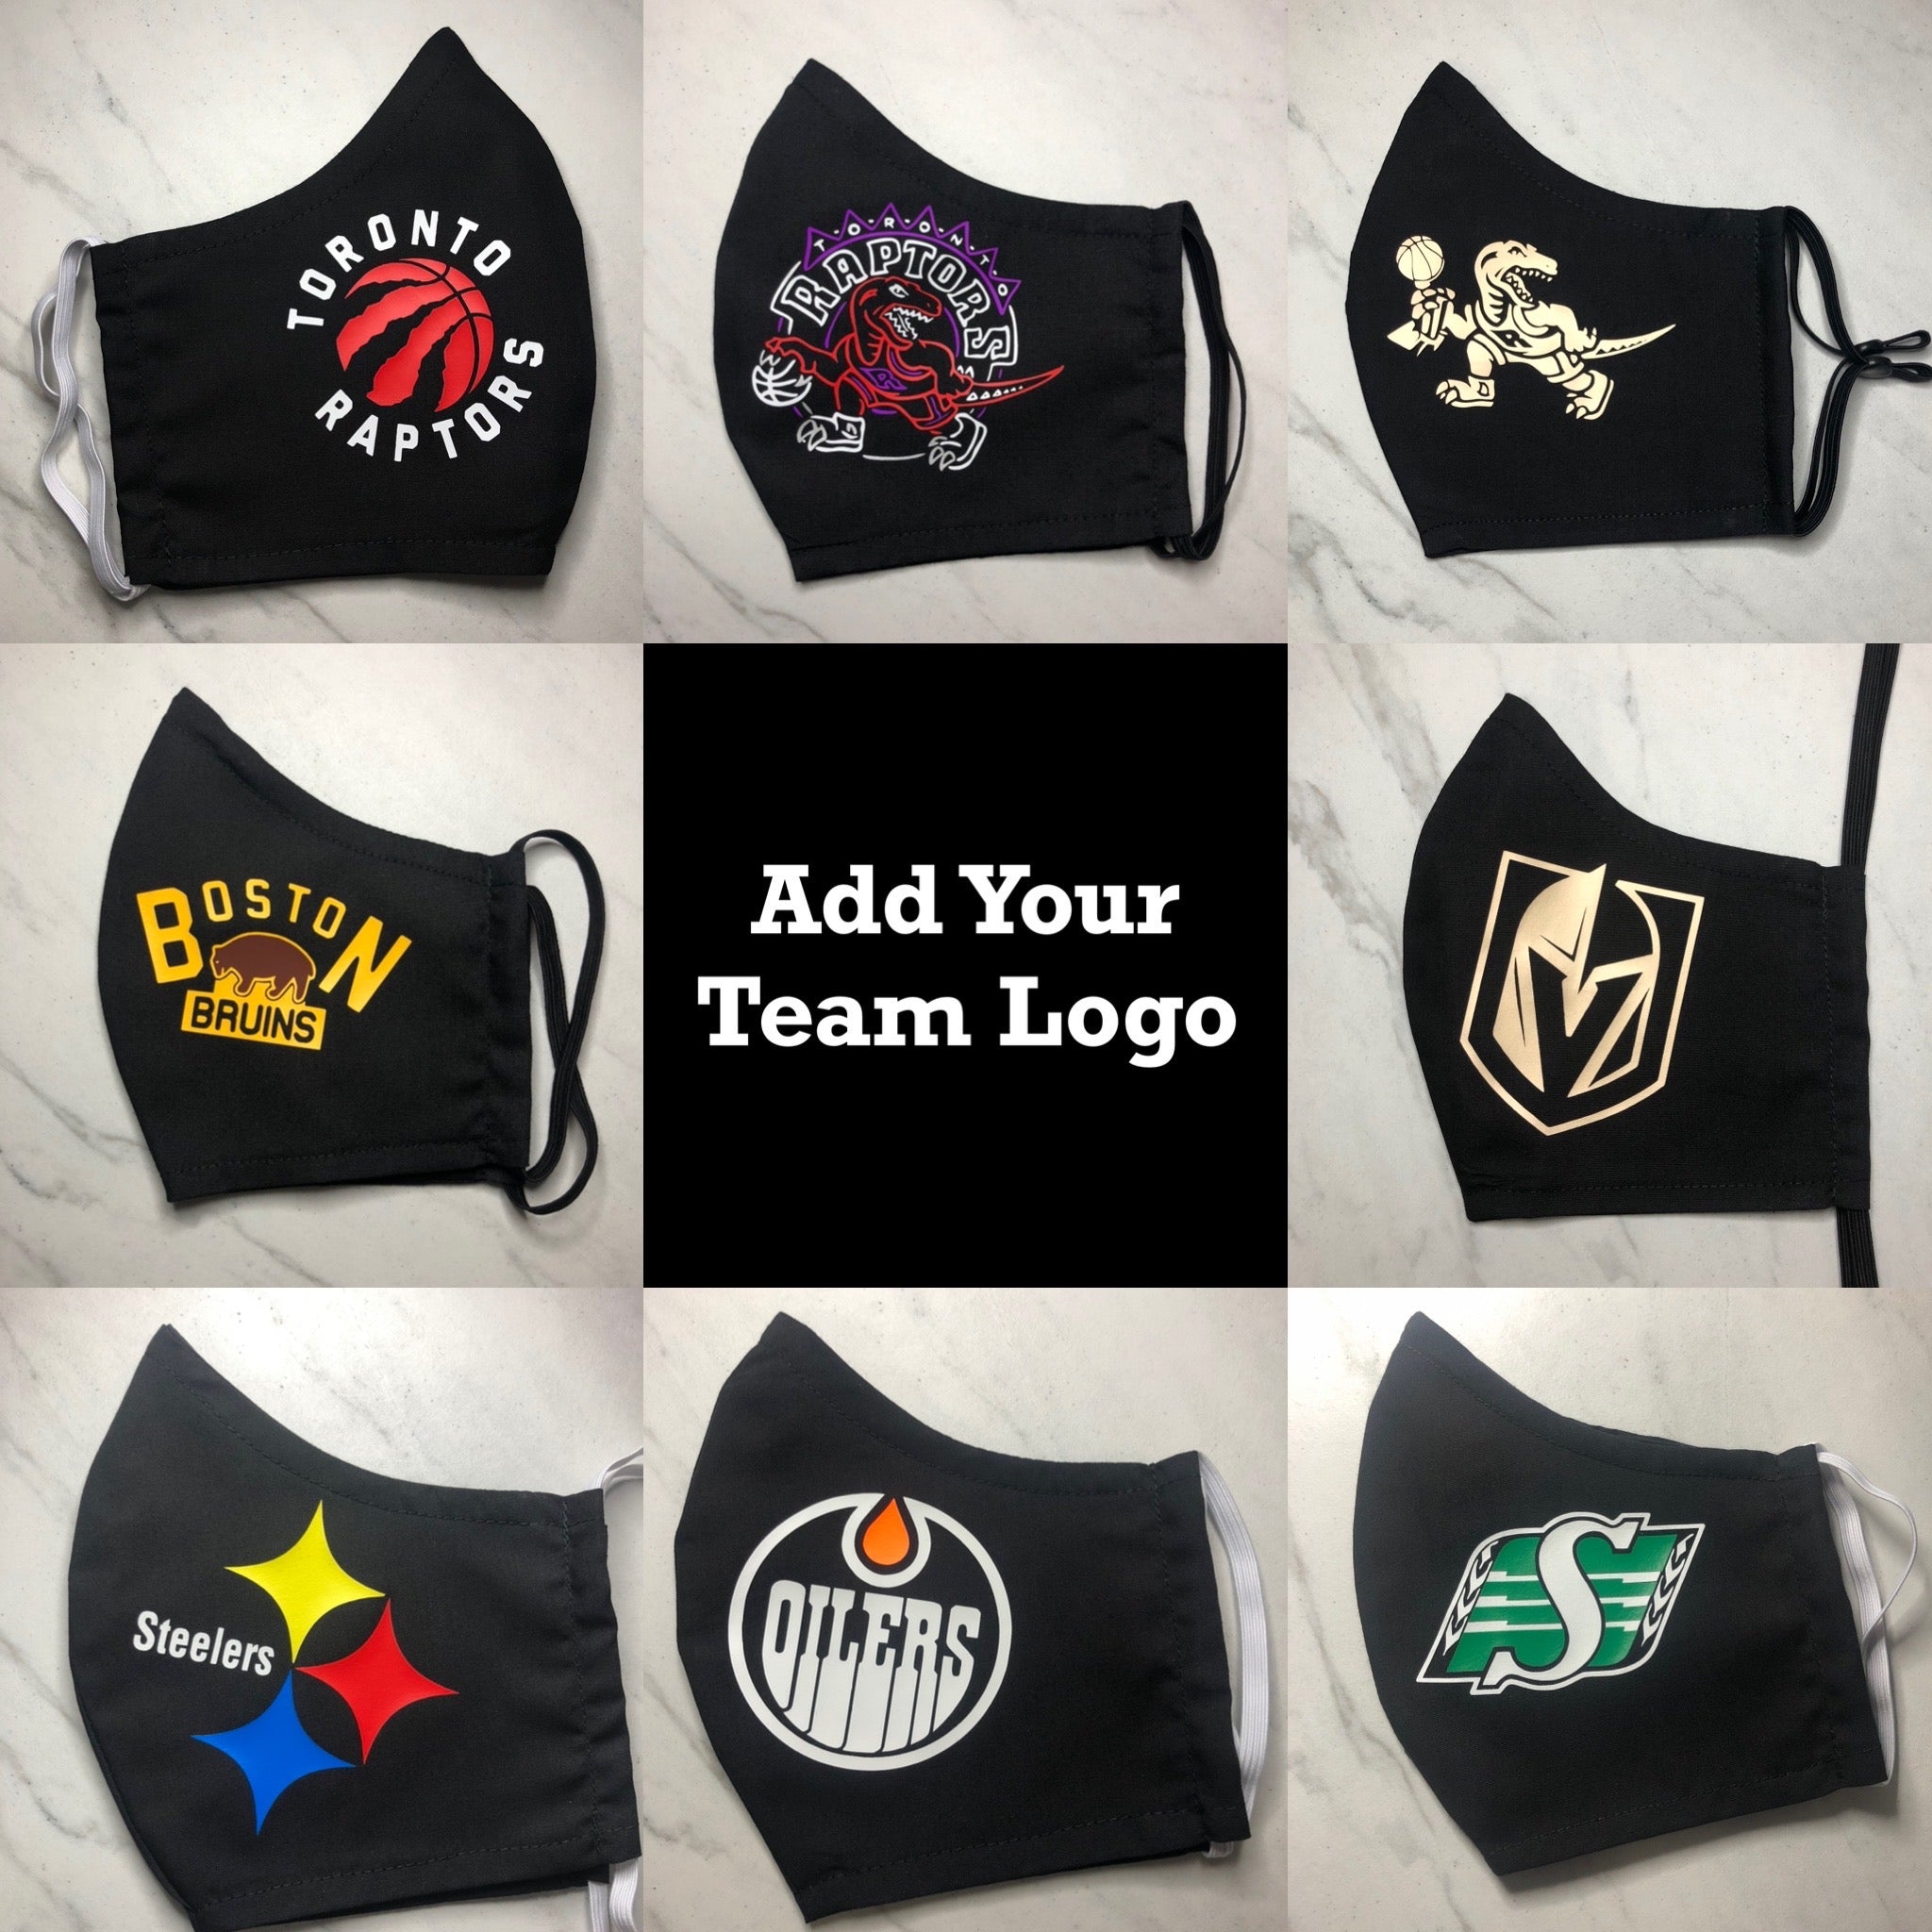 Boston Bruins Face Mask Fan Gear - Sports Fan Shop